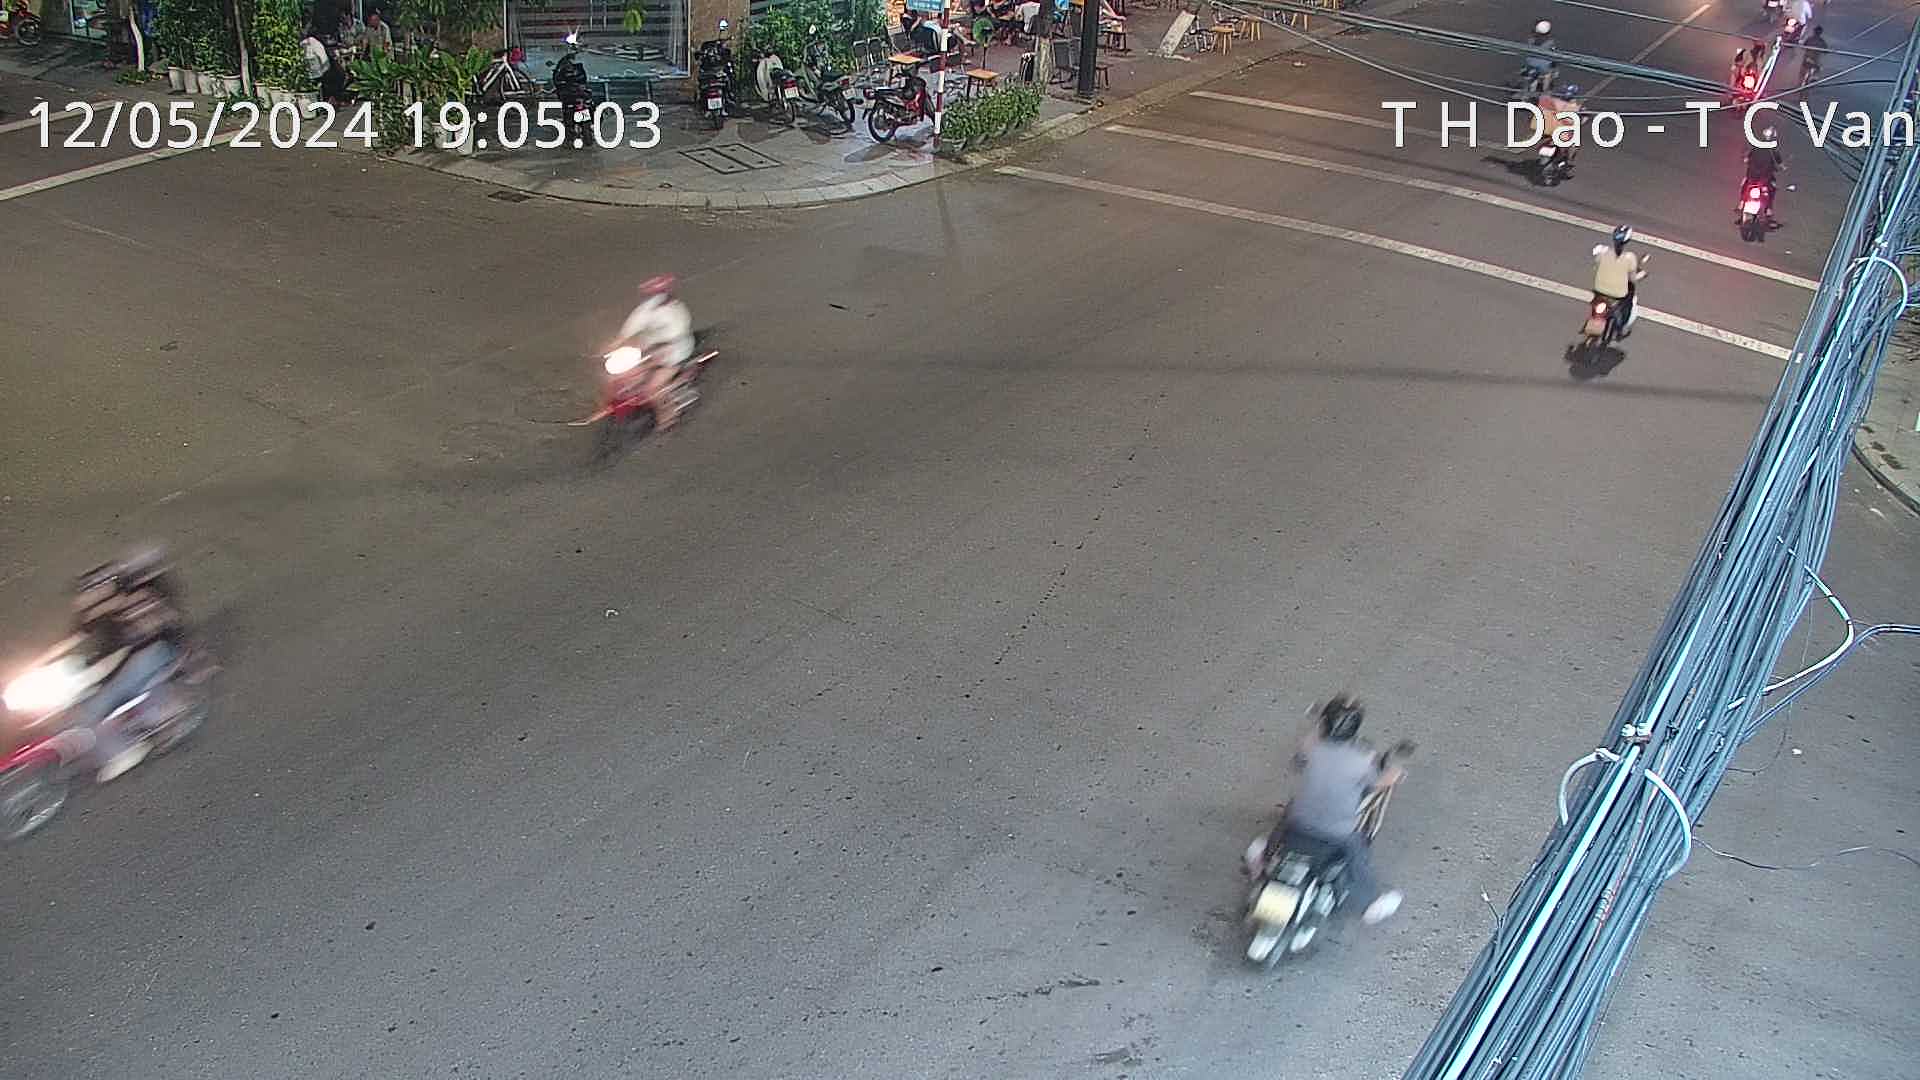 Xem camera giao thông Quy Nhơn Bình Định hình ảnh camera tuyến đường Ngã 4 Trần Hưng Đạo - Trần Cao Vân